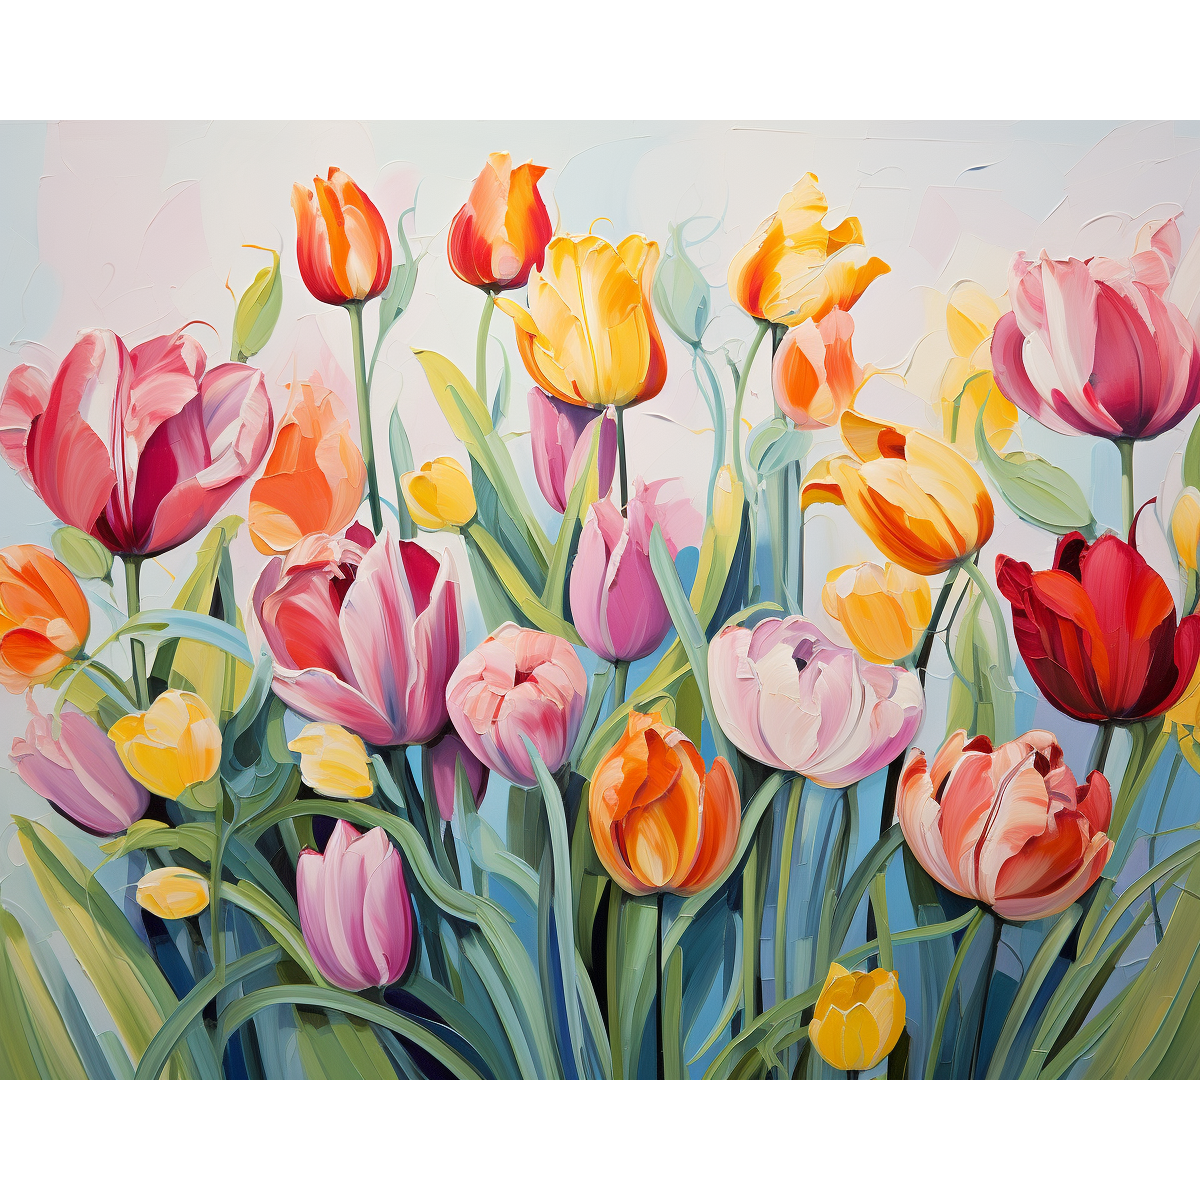 Schiera di tulipani colorati